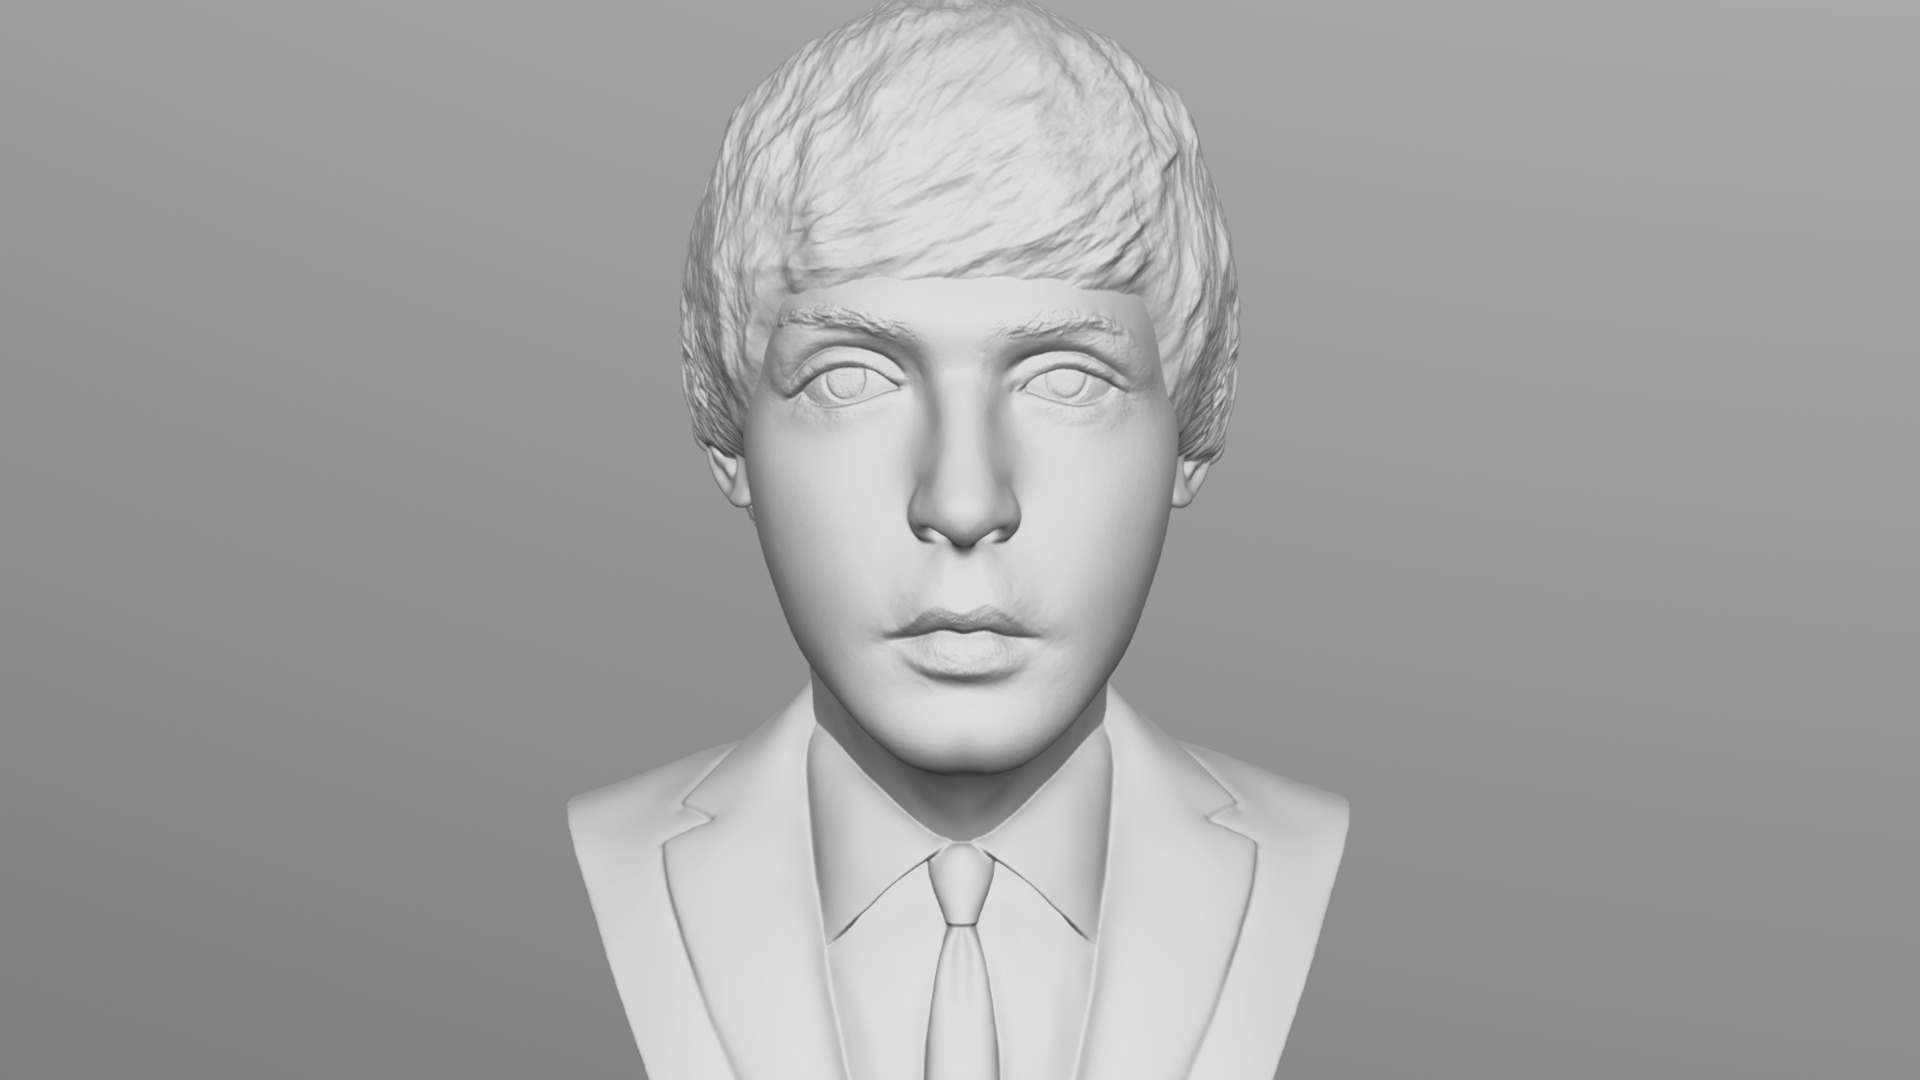 3D model Paul McCartney bust for 3D printing - This is a 3D model of the Paul McCartney bust for 3D printing. The 3D model is about a man with white hair.